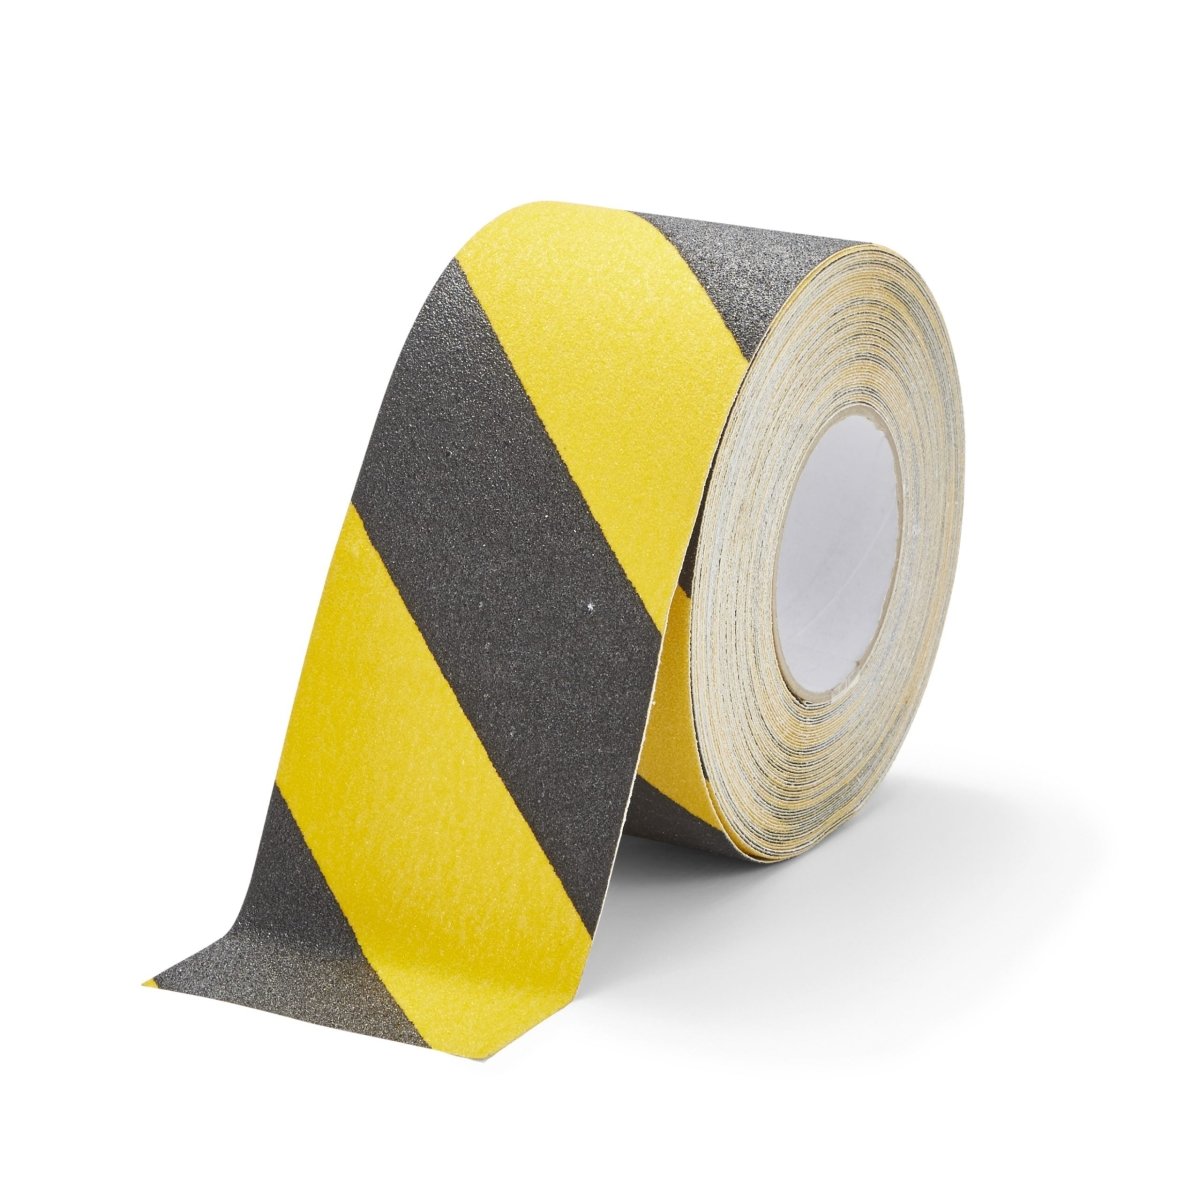 Course Grade Hazard Yellow Black Anti Slip Tape Roll - Slips Away - H3402D-Standard-Safety-Grip-HAZARD-100mm-1-1 -